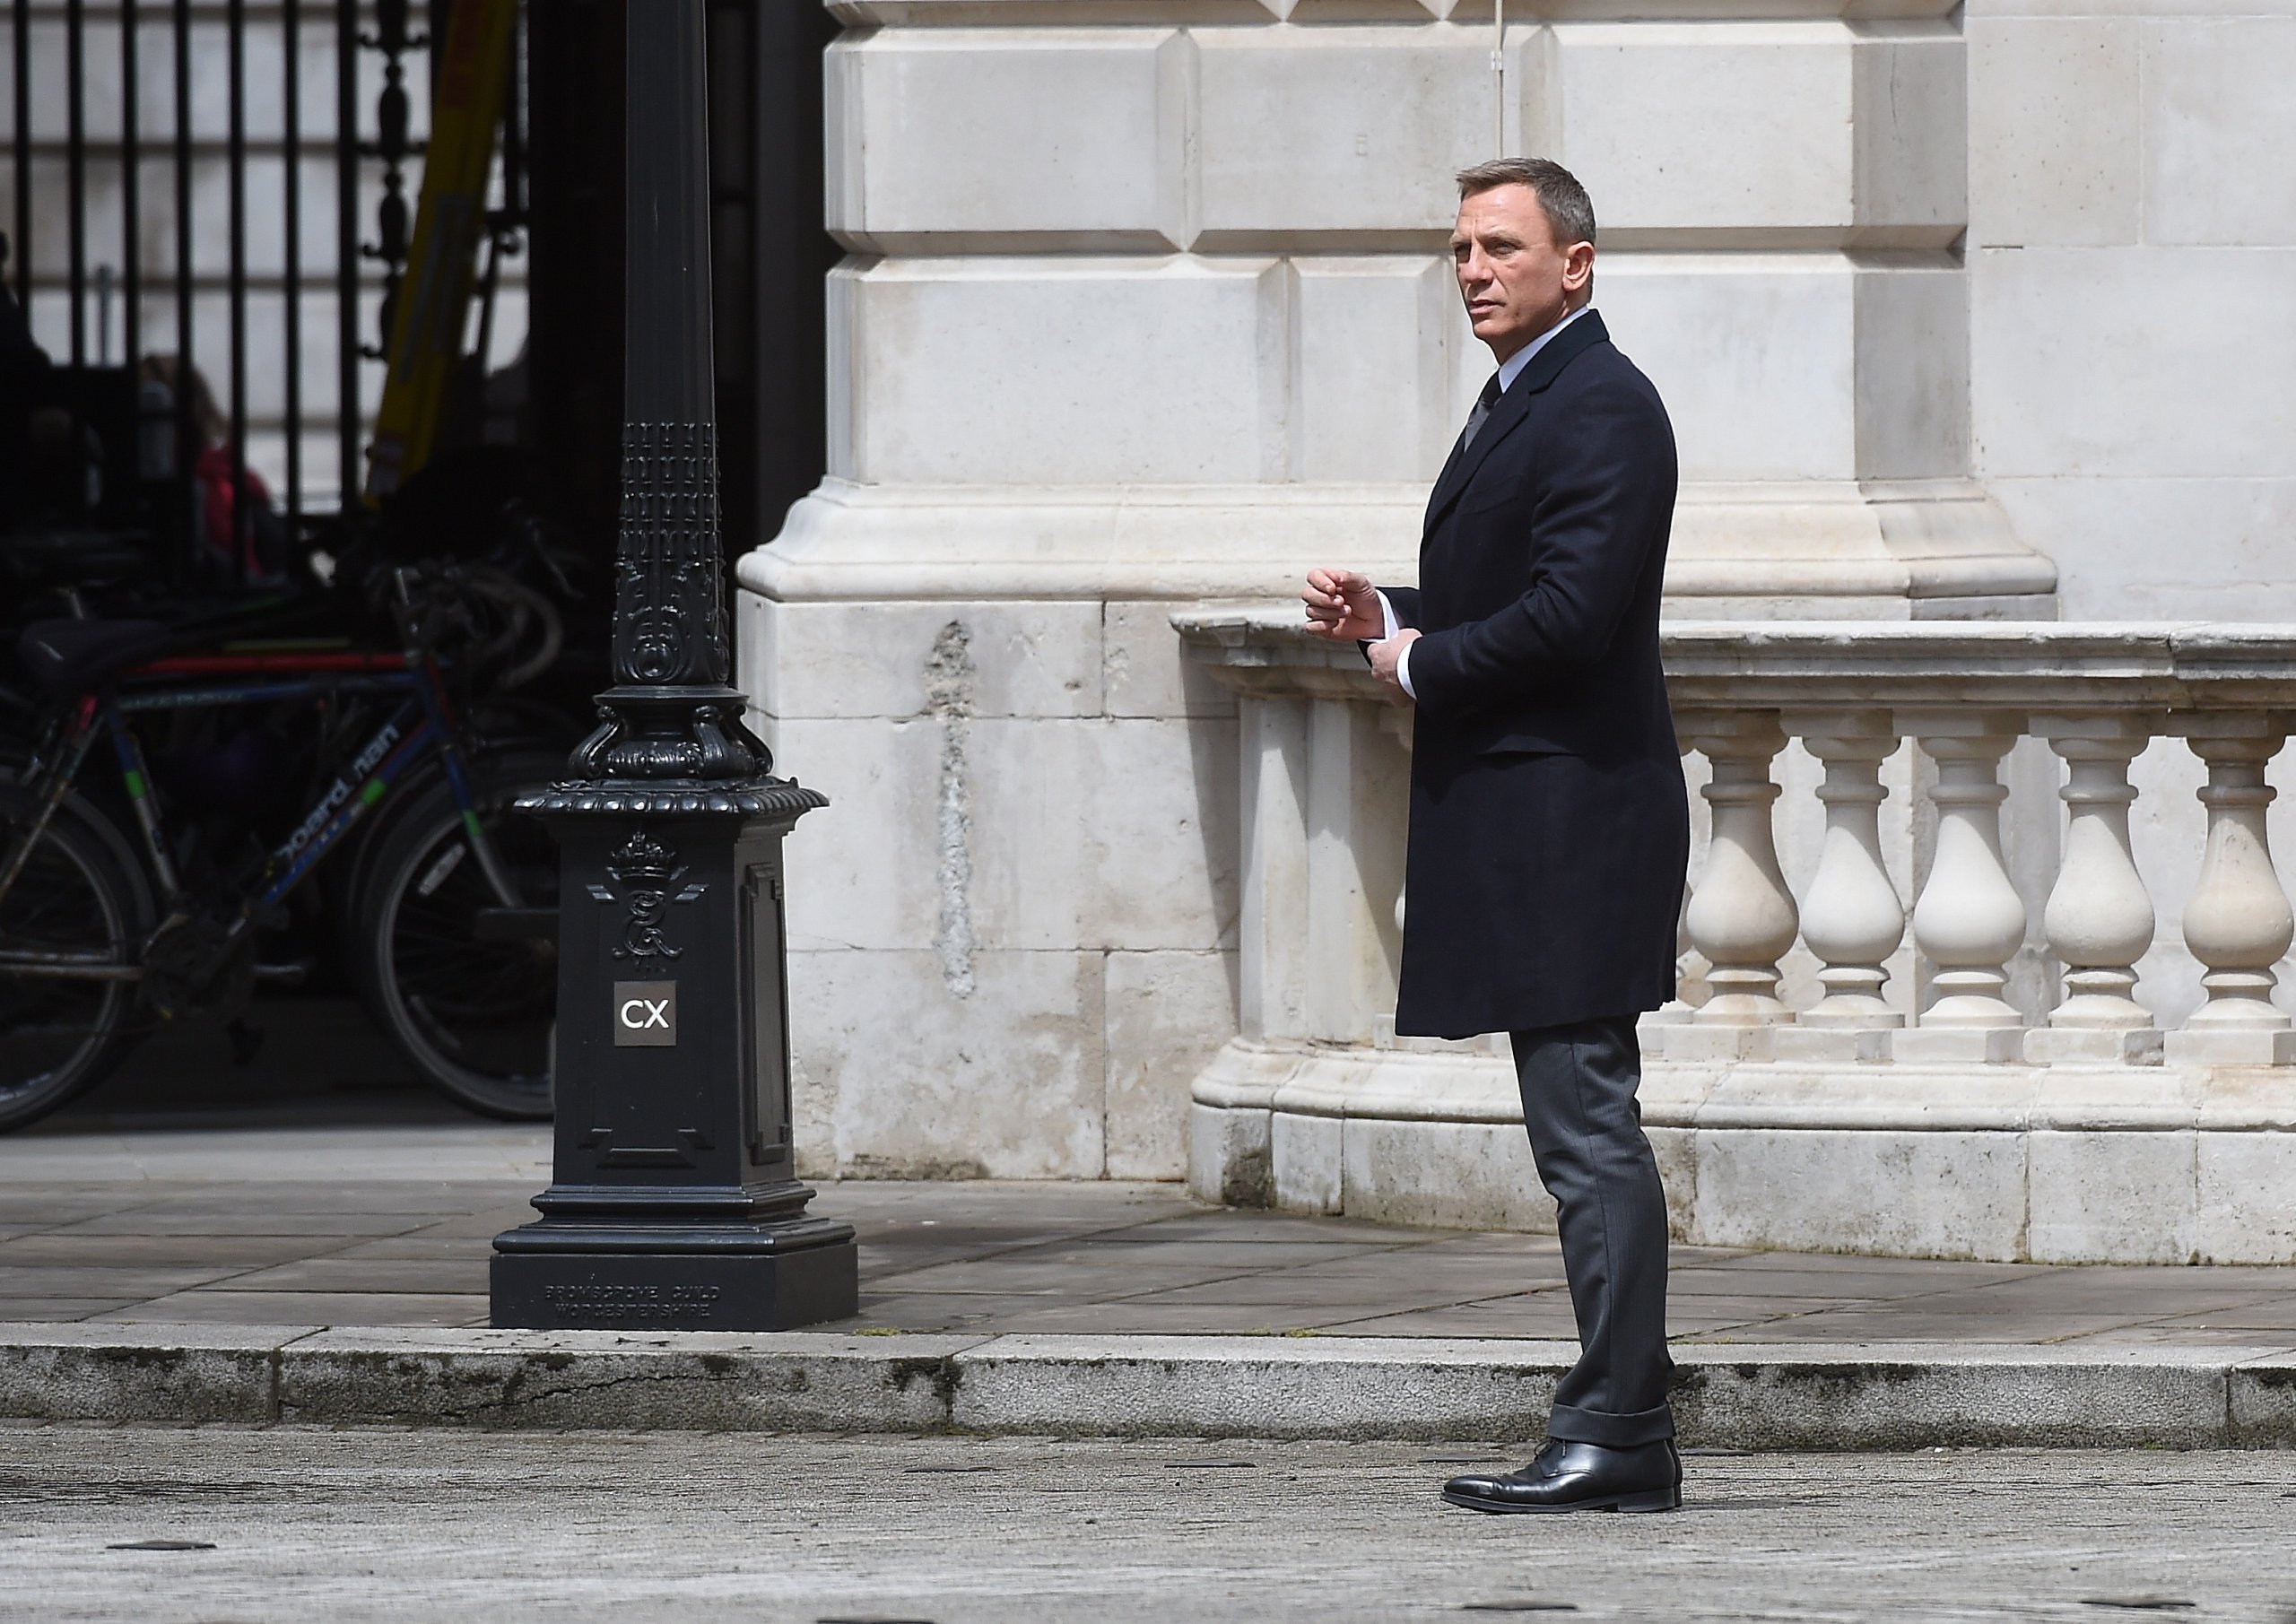 007 スペクター」でダニエル・クレイグ演じるジェームズ・ボンドが履い